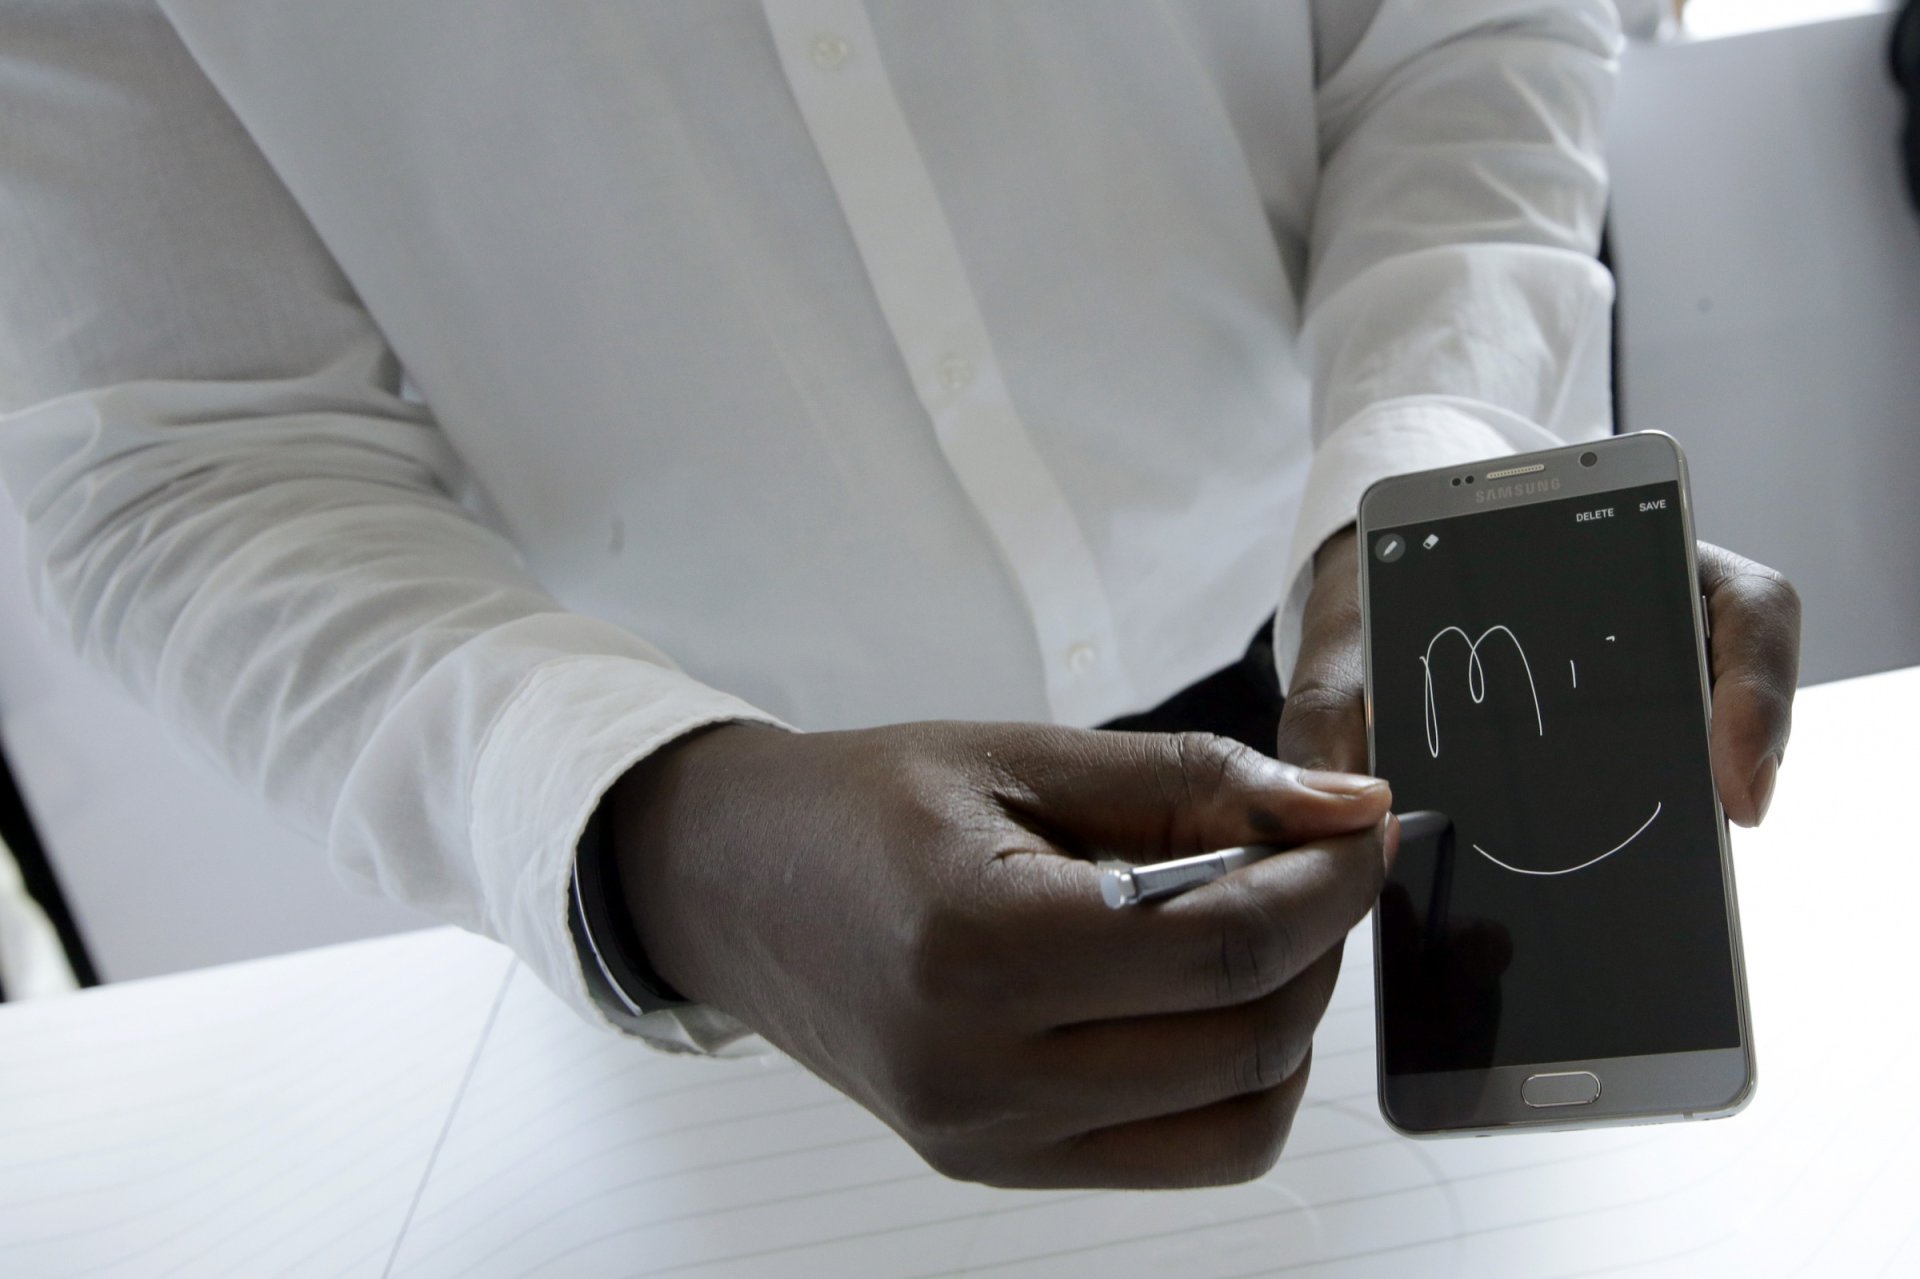 Nuotraukoje pavaizduotas naujasis Samsung Galaxy Note 5 mobilusis telefonas